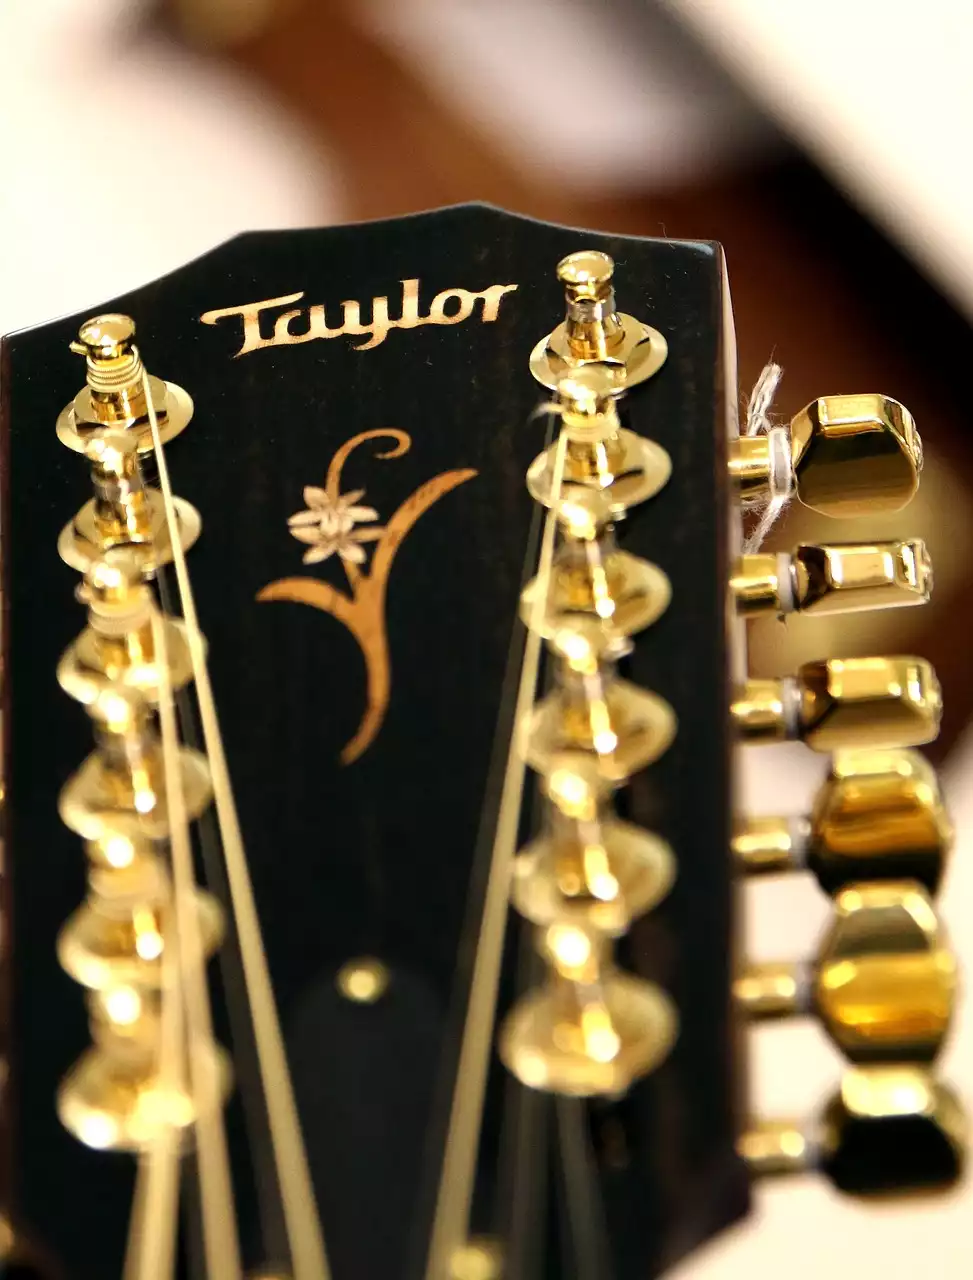 ההיסטוריה של טיילור גיטרות